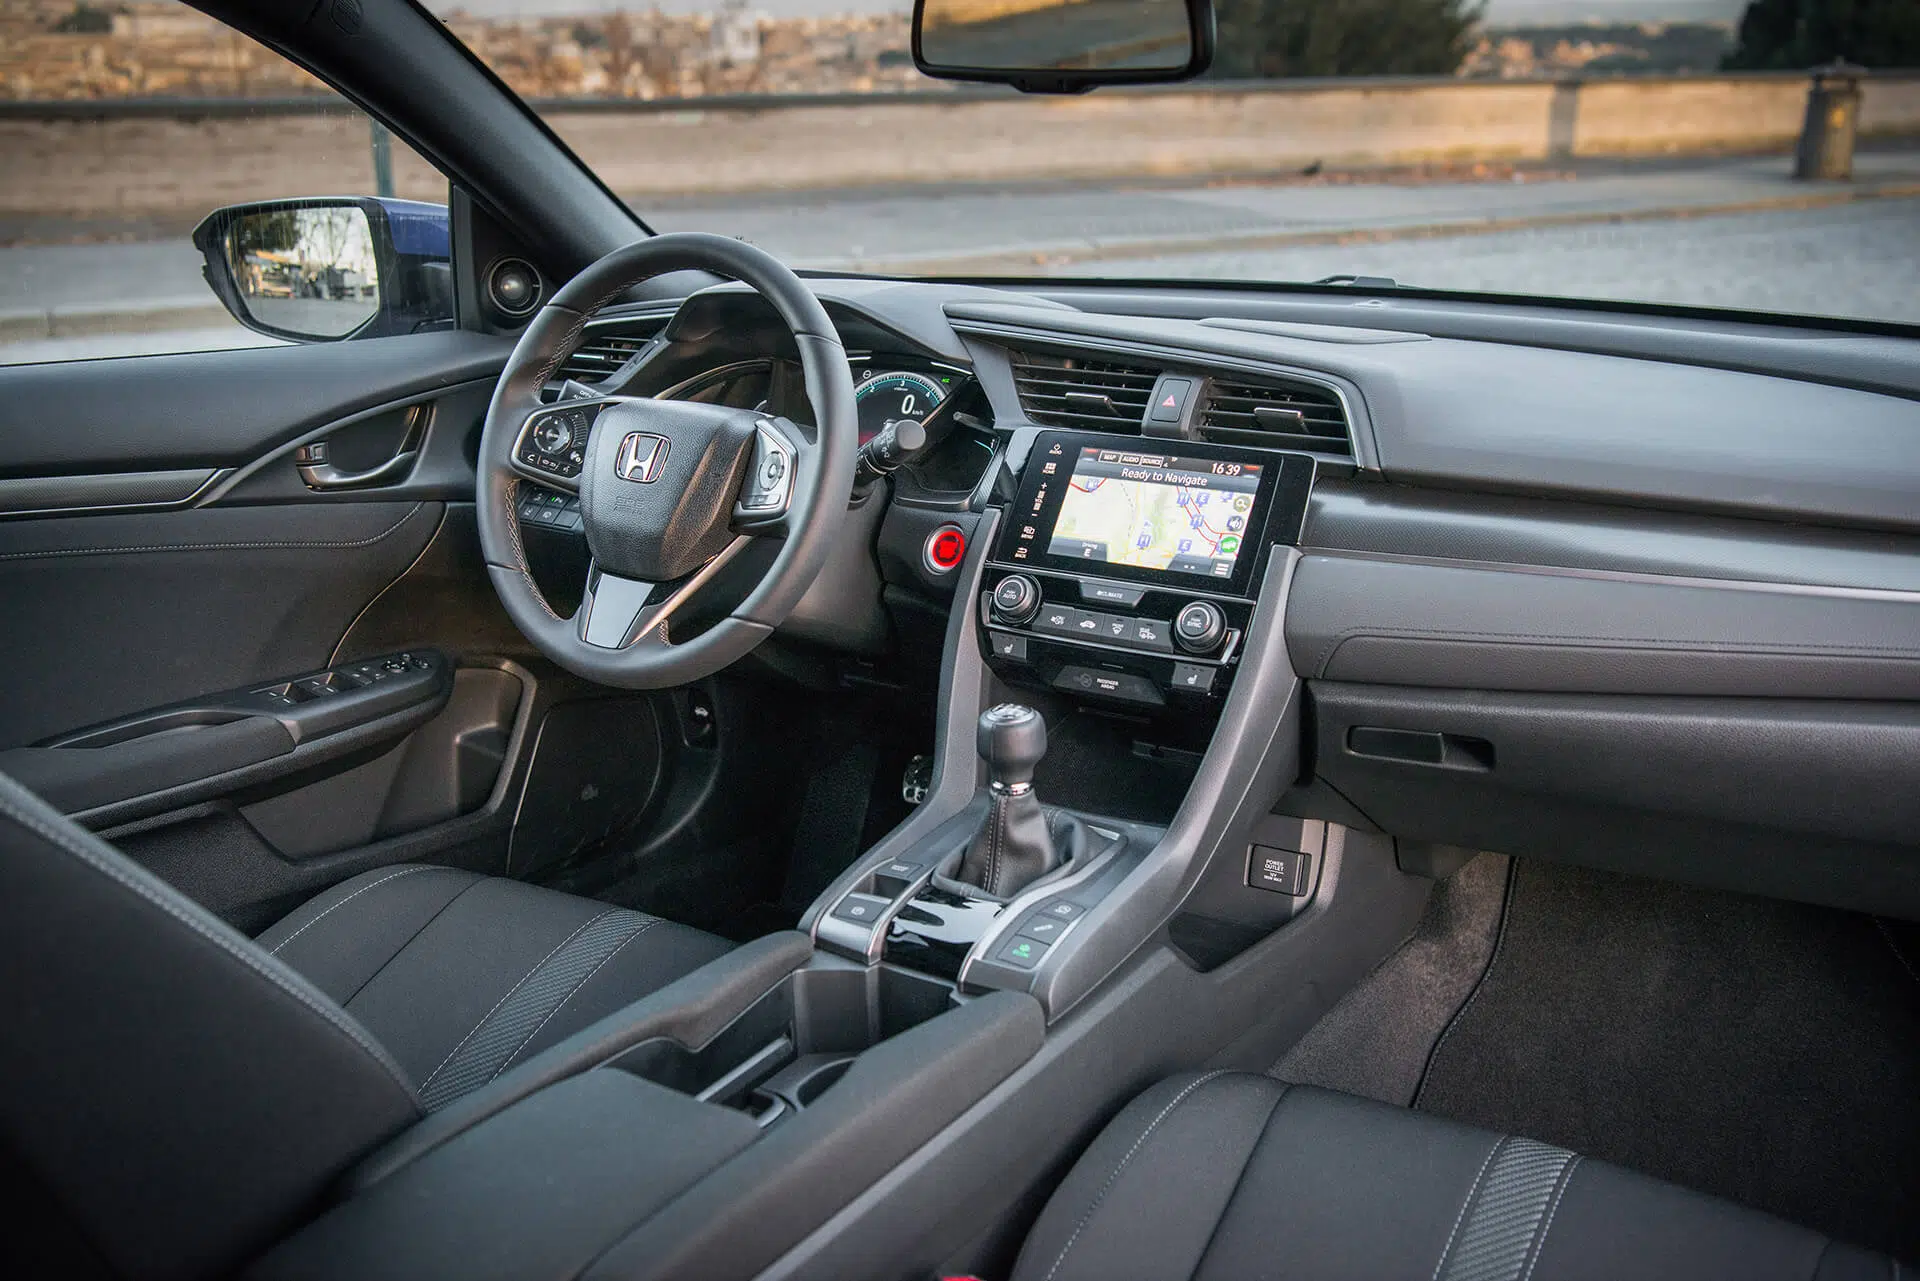 Honda Civic 1.6 i-DTEC — interior